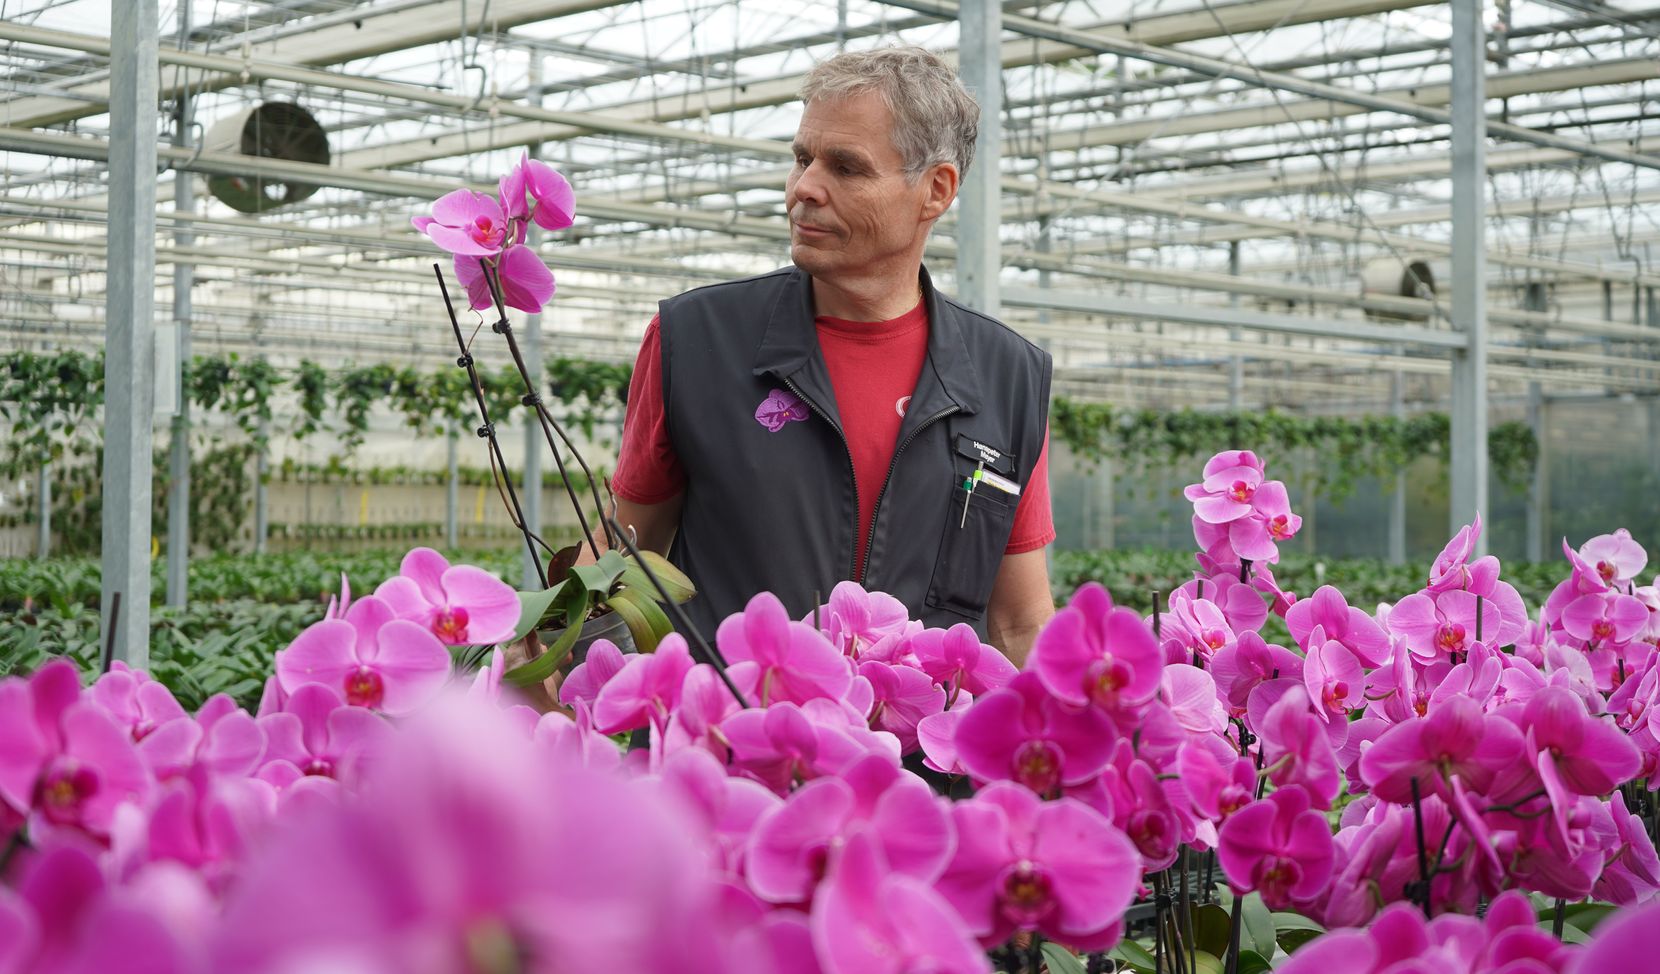 Gärtner Hanspeter Meyer hält eine Orchidee in der Hand. Im Vordergrund sind viele rosarot blühende Orchideen zu sehen.